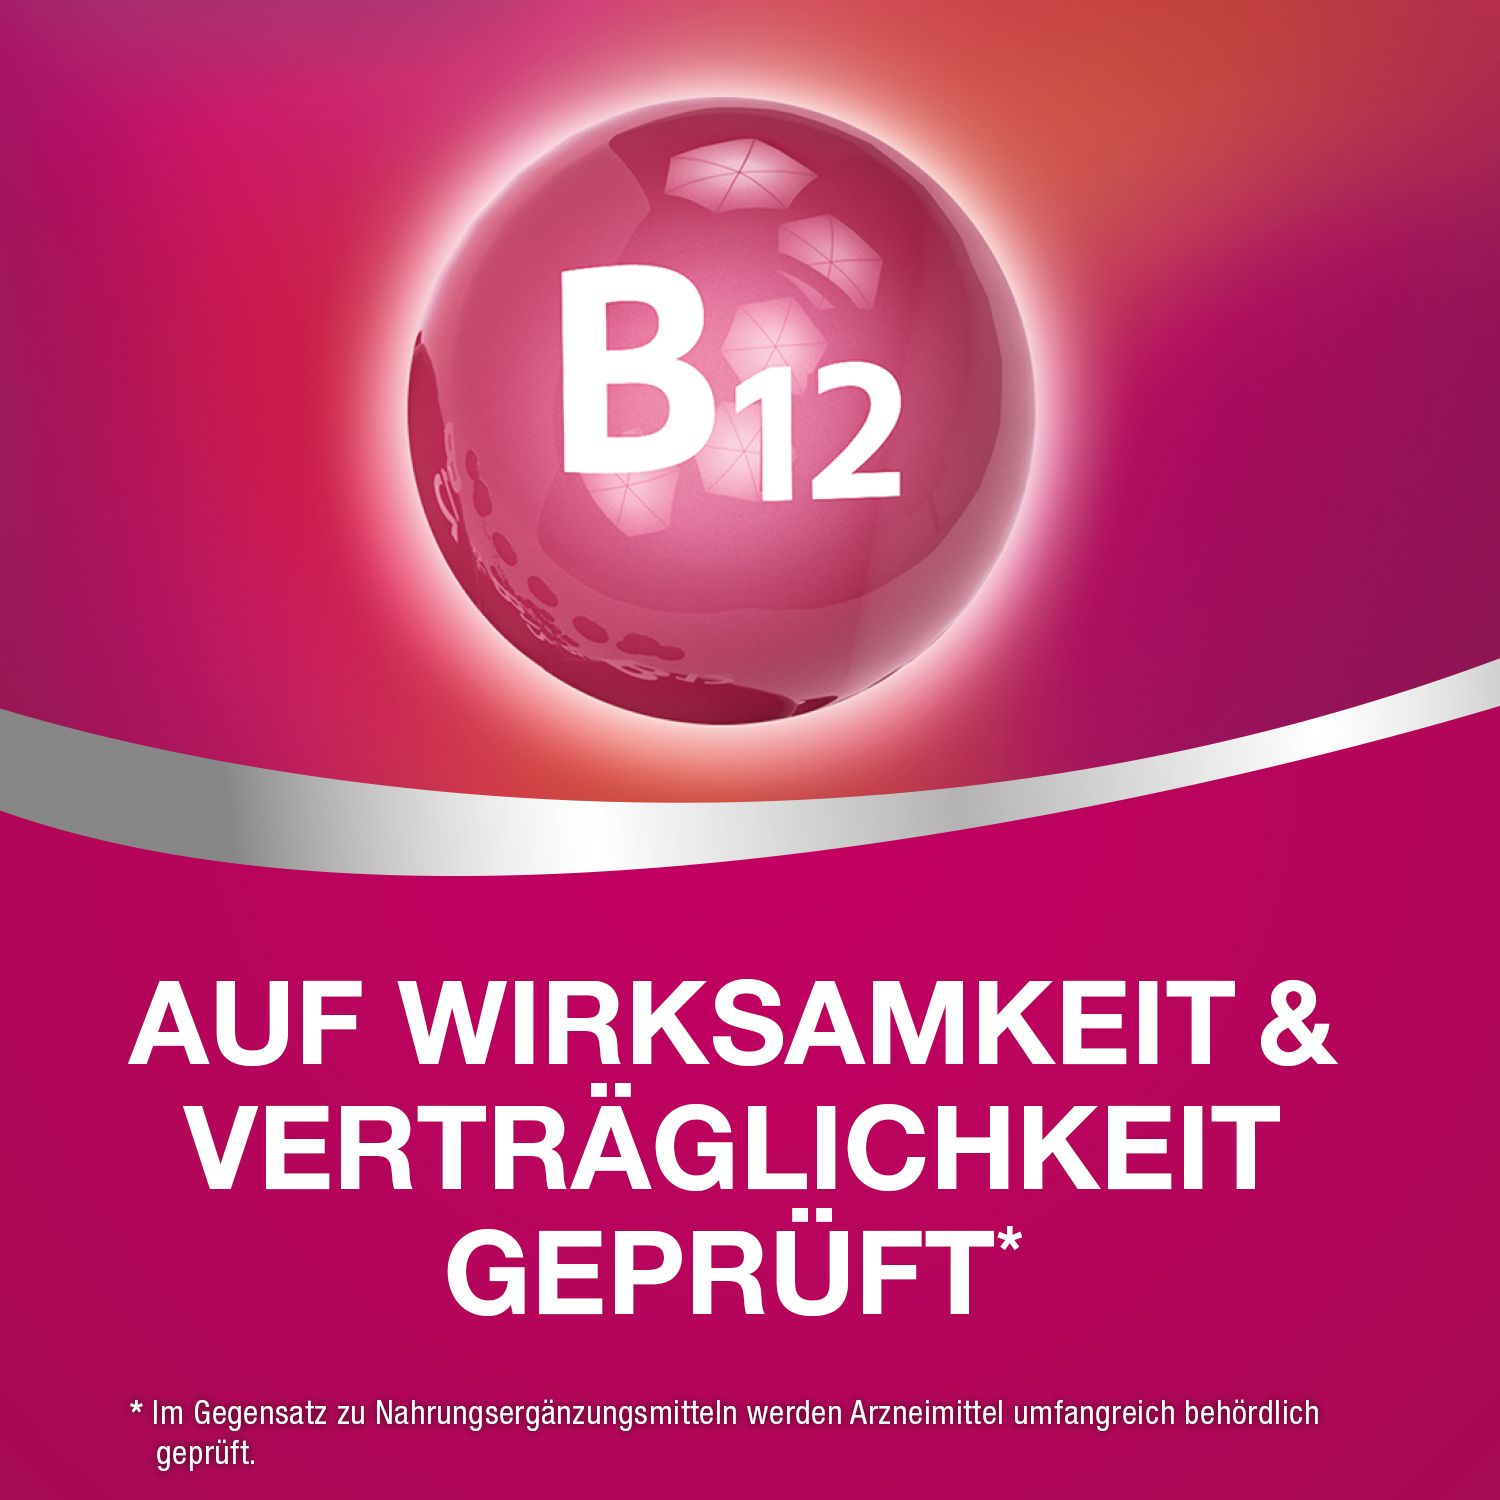 B12 Ankermann®